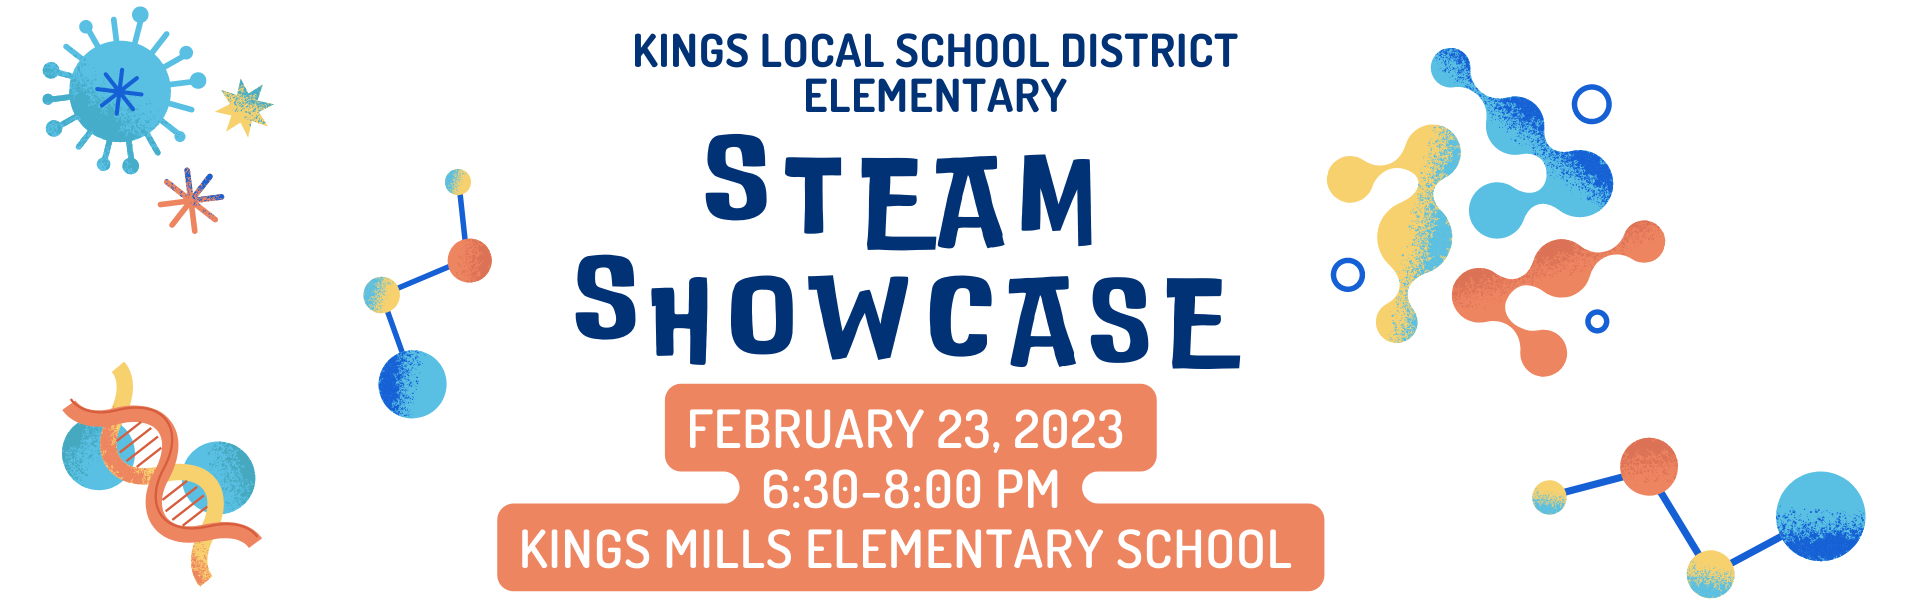 KLSD Elementary STEAM Showcase, February 23, 2023 from 6:30-8:00 p.m. at Kings Mills Elementary School